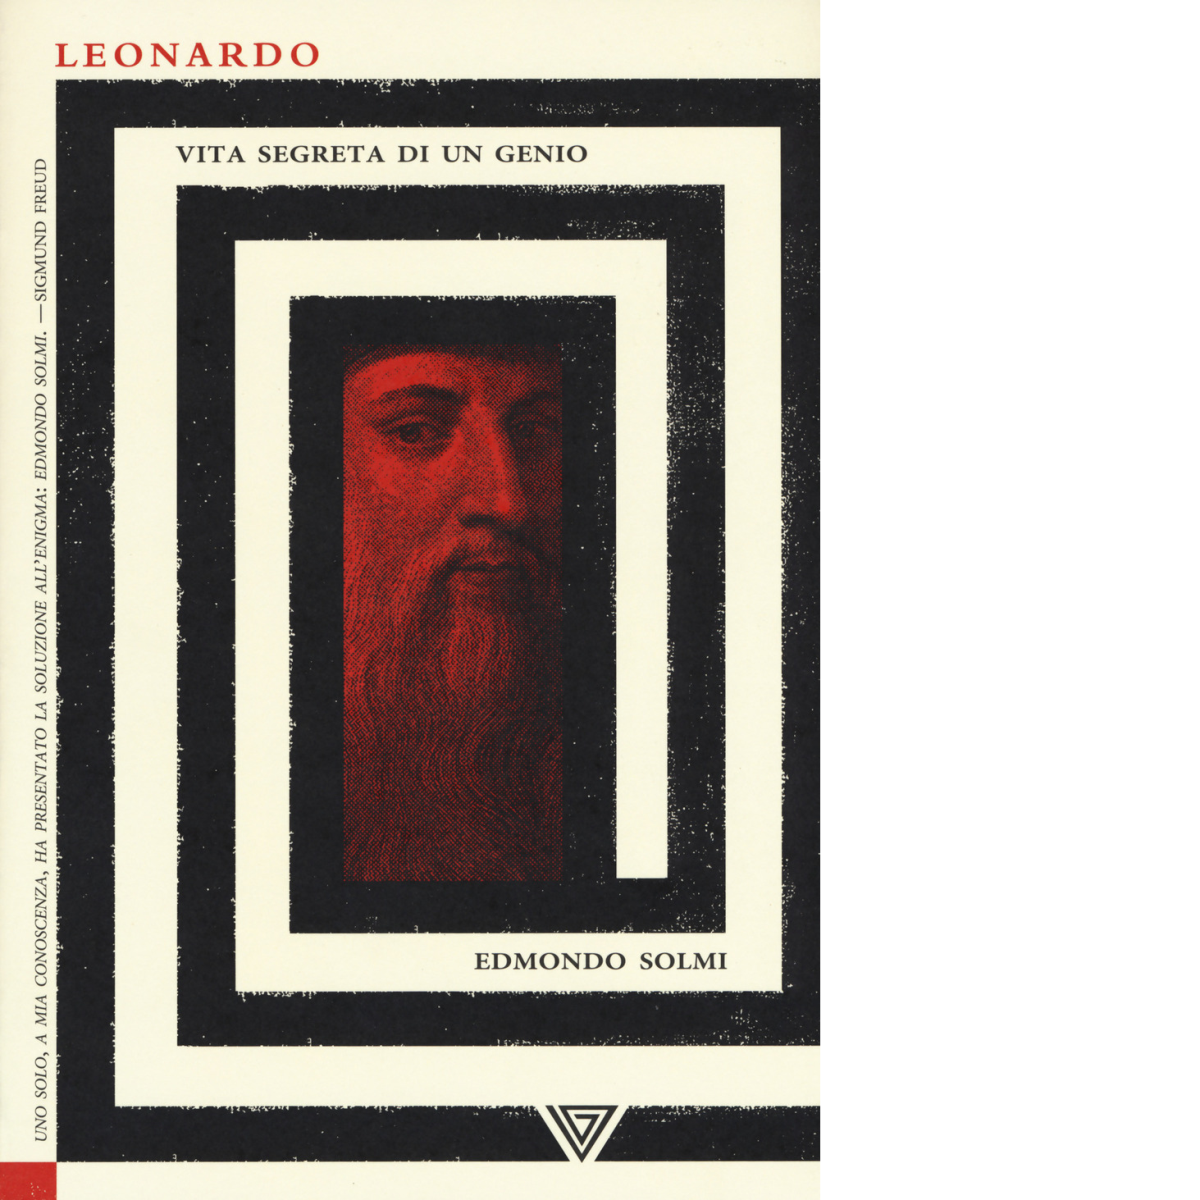 Leonardo. Vita segreta di un genio - Edmondo Solmi - Perrone, 2019 libro usato